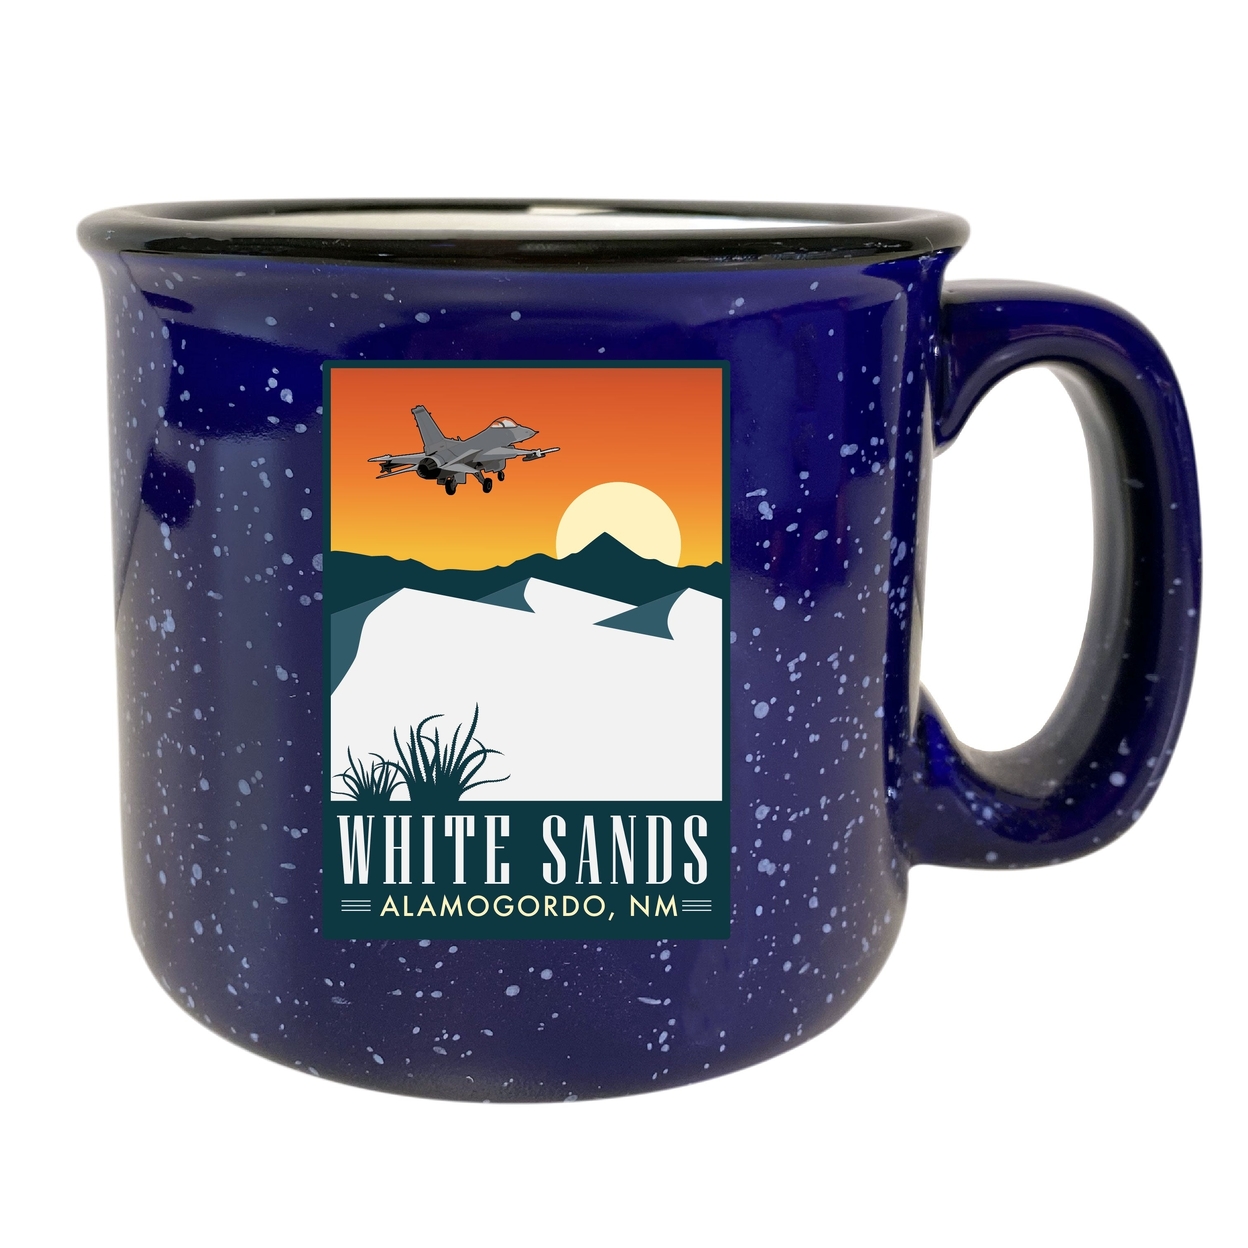 White Sands Alamogordo New Mexico 16 Oz Navy Speckled Ceramic Camper Coffee Mug Choice Of Design - Design B